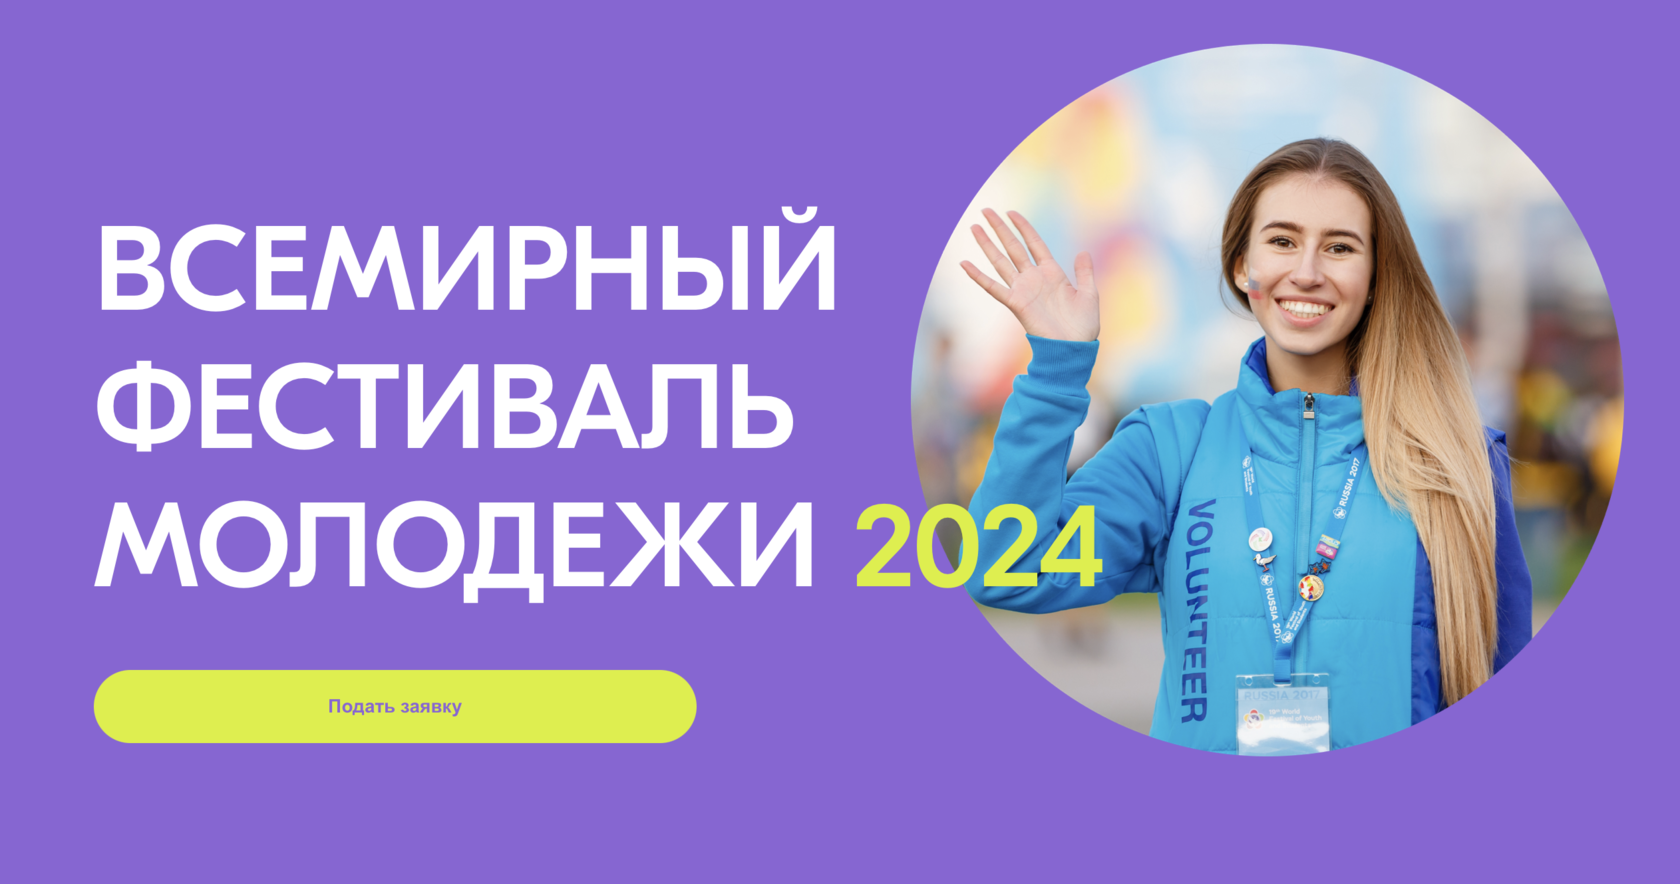 Сколько добровольцев набрали в россии в 2024. Всемирный фестиваль молодё2024. Всемирный фестиваль молодёжи и студентов 2024. О фестивале молодежи в 2024 году. Волонтеры на фестиваль молодежи 2024.